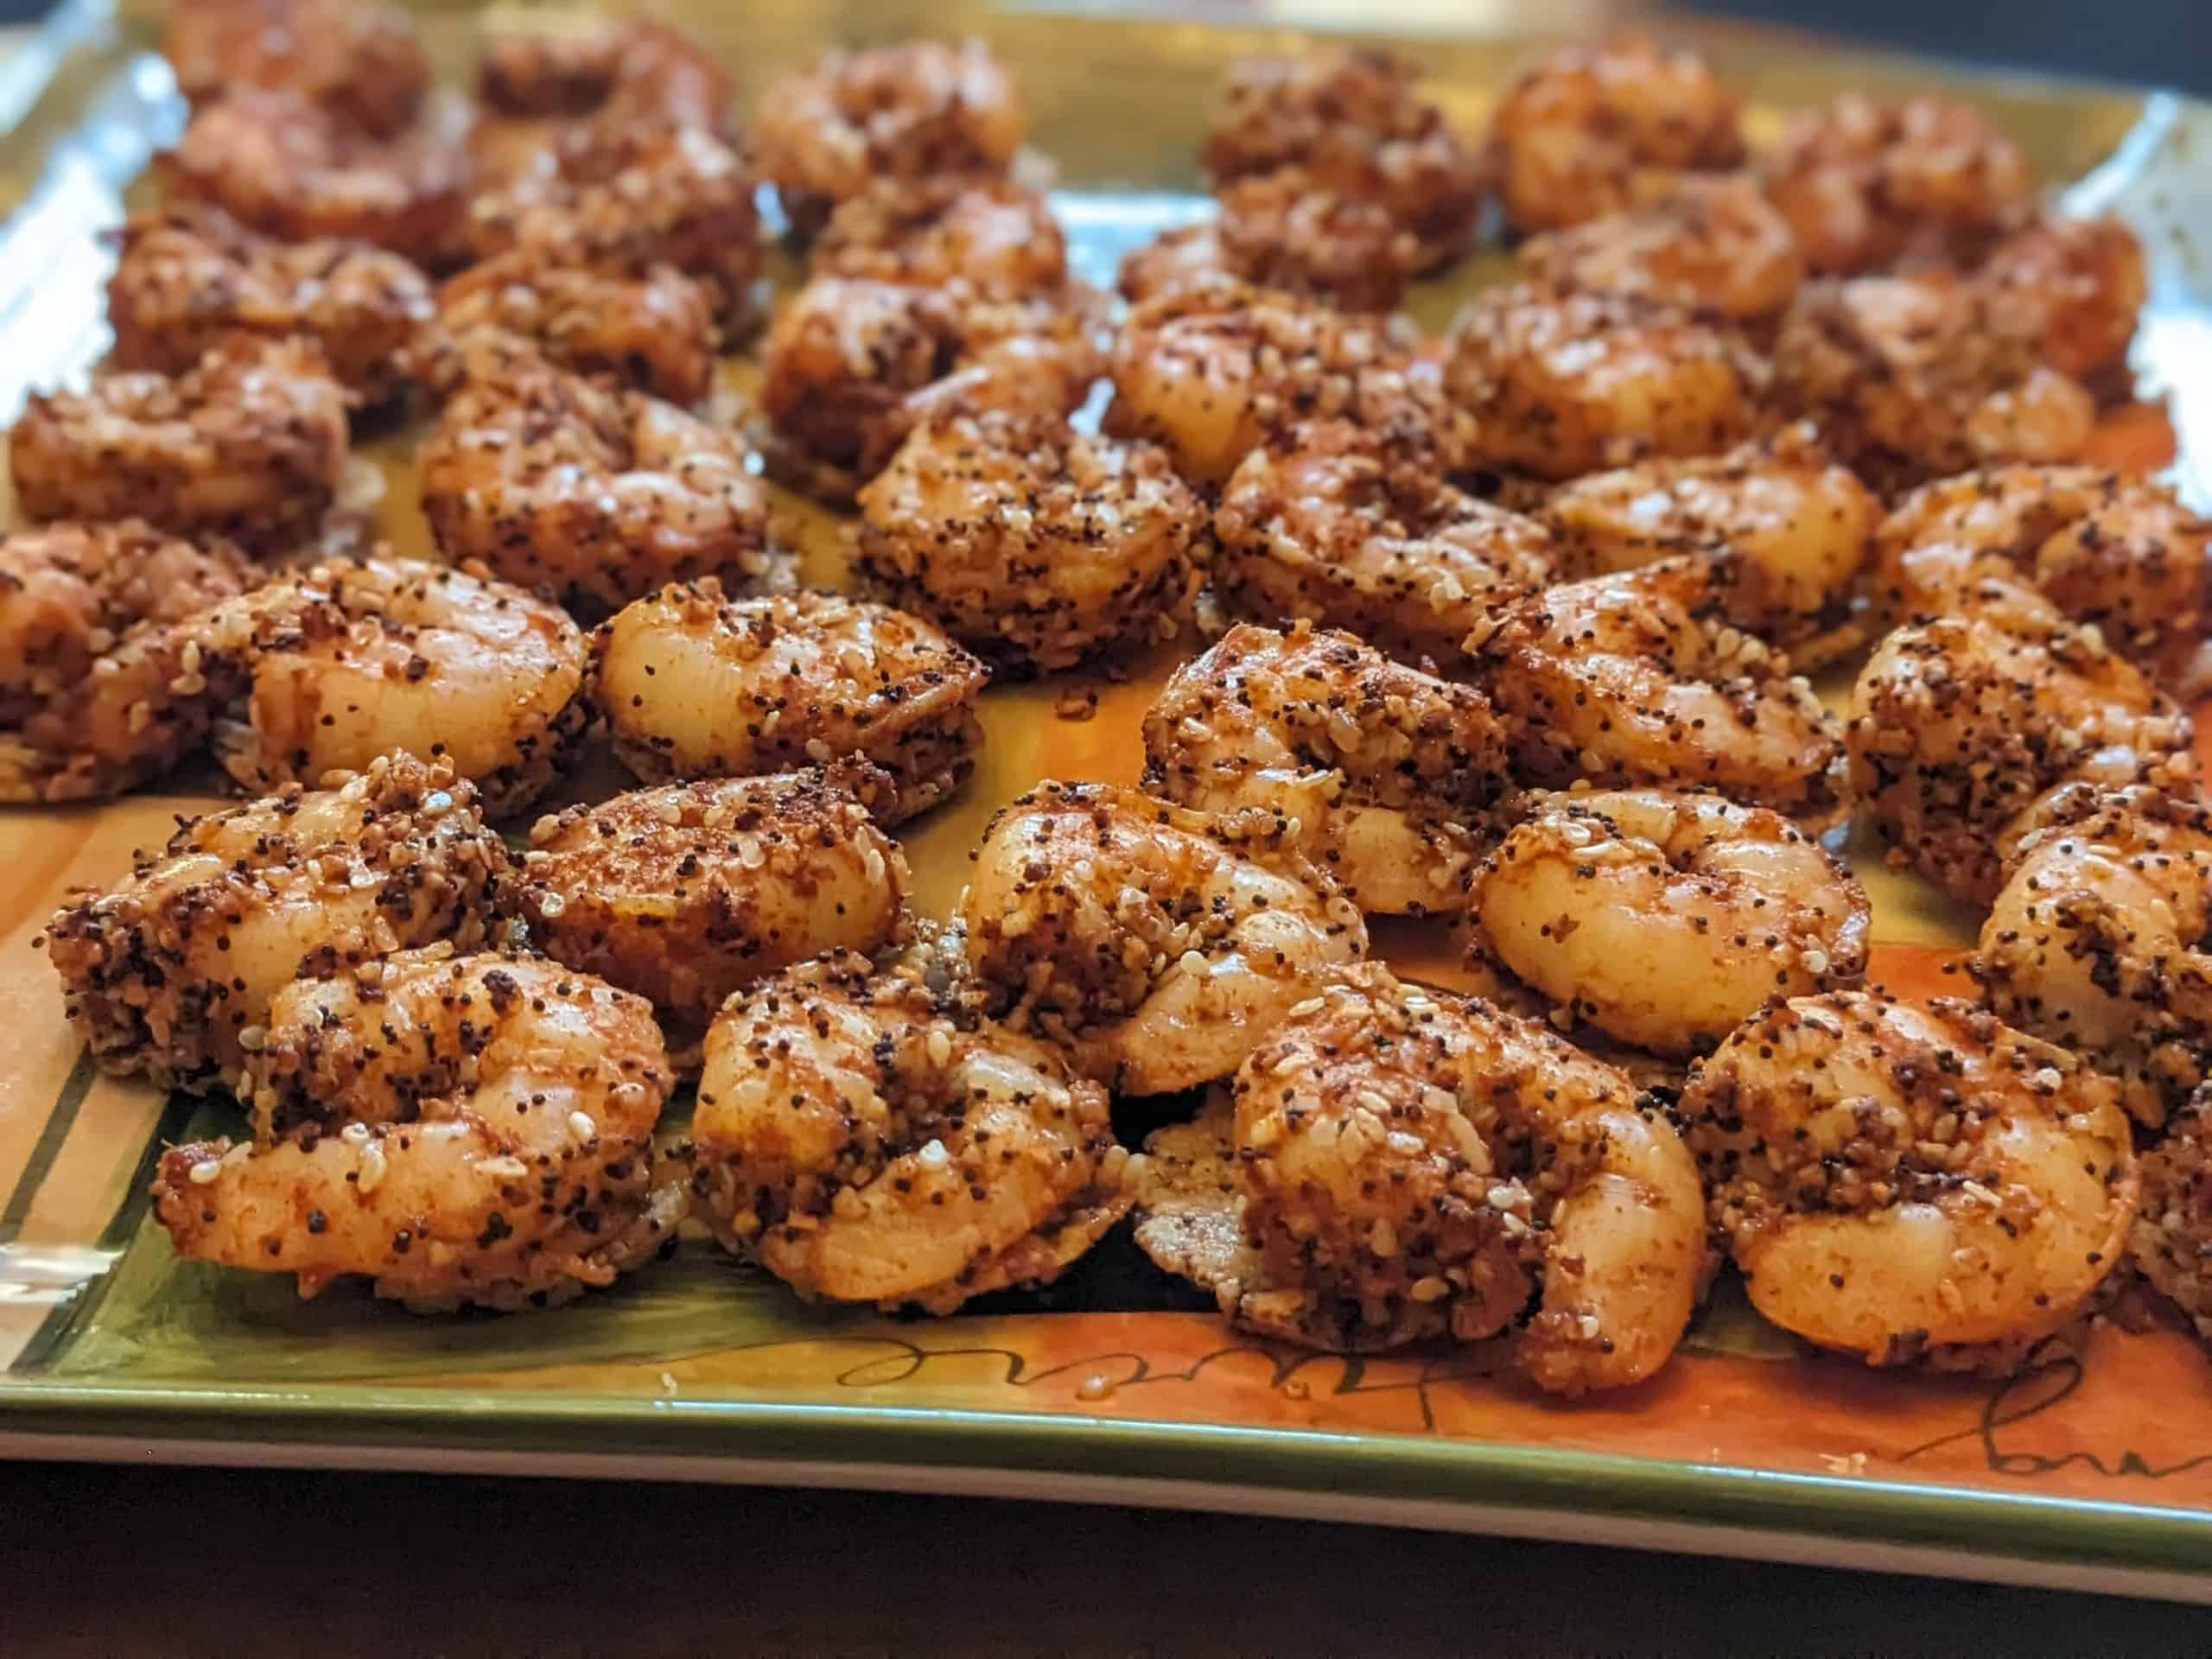 Everything Shrimp Bites on Parmesan Crisps arranged on a serving platter